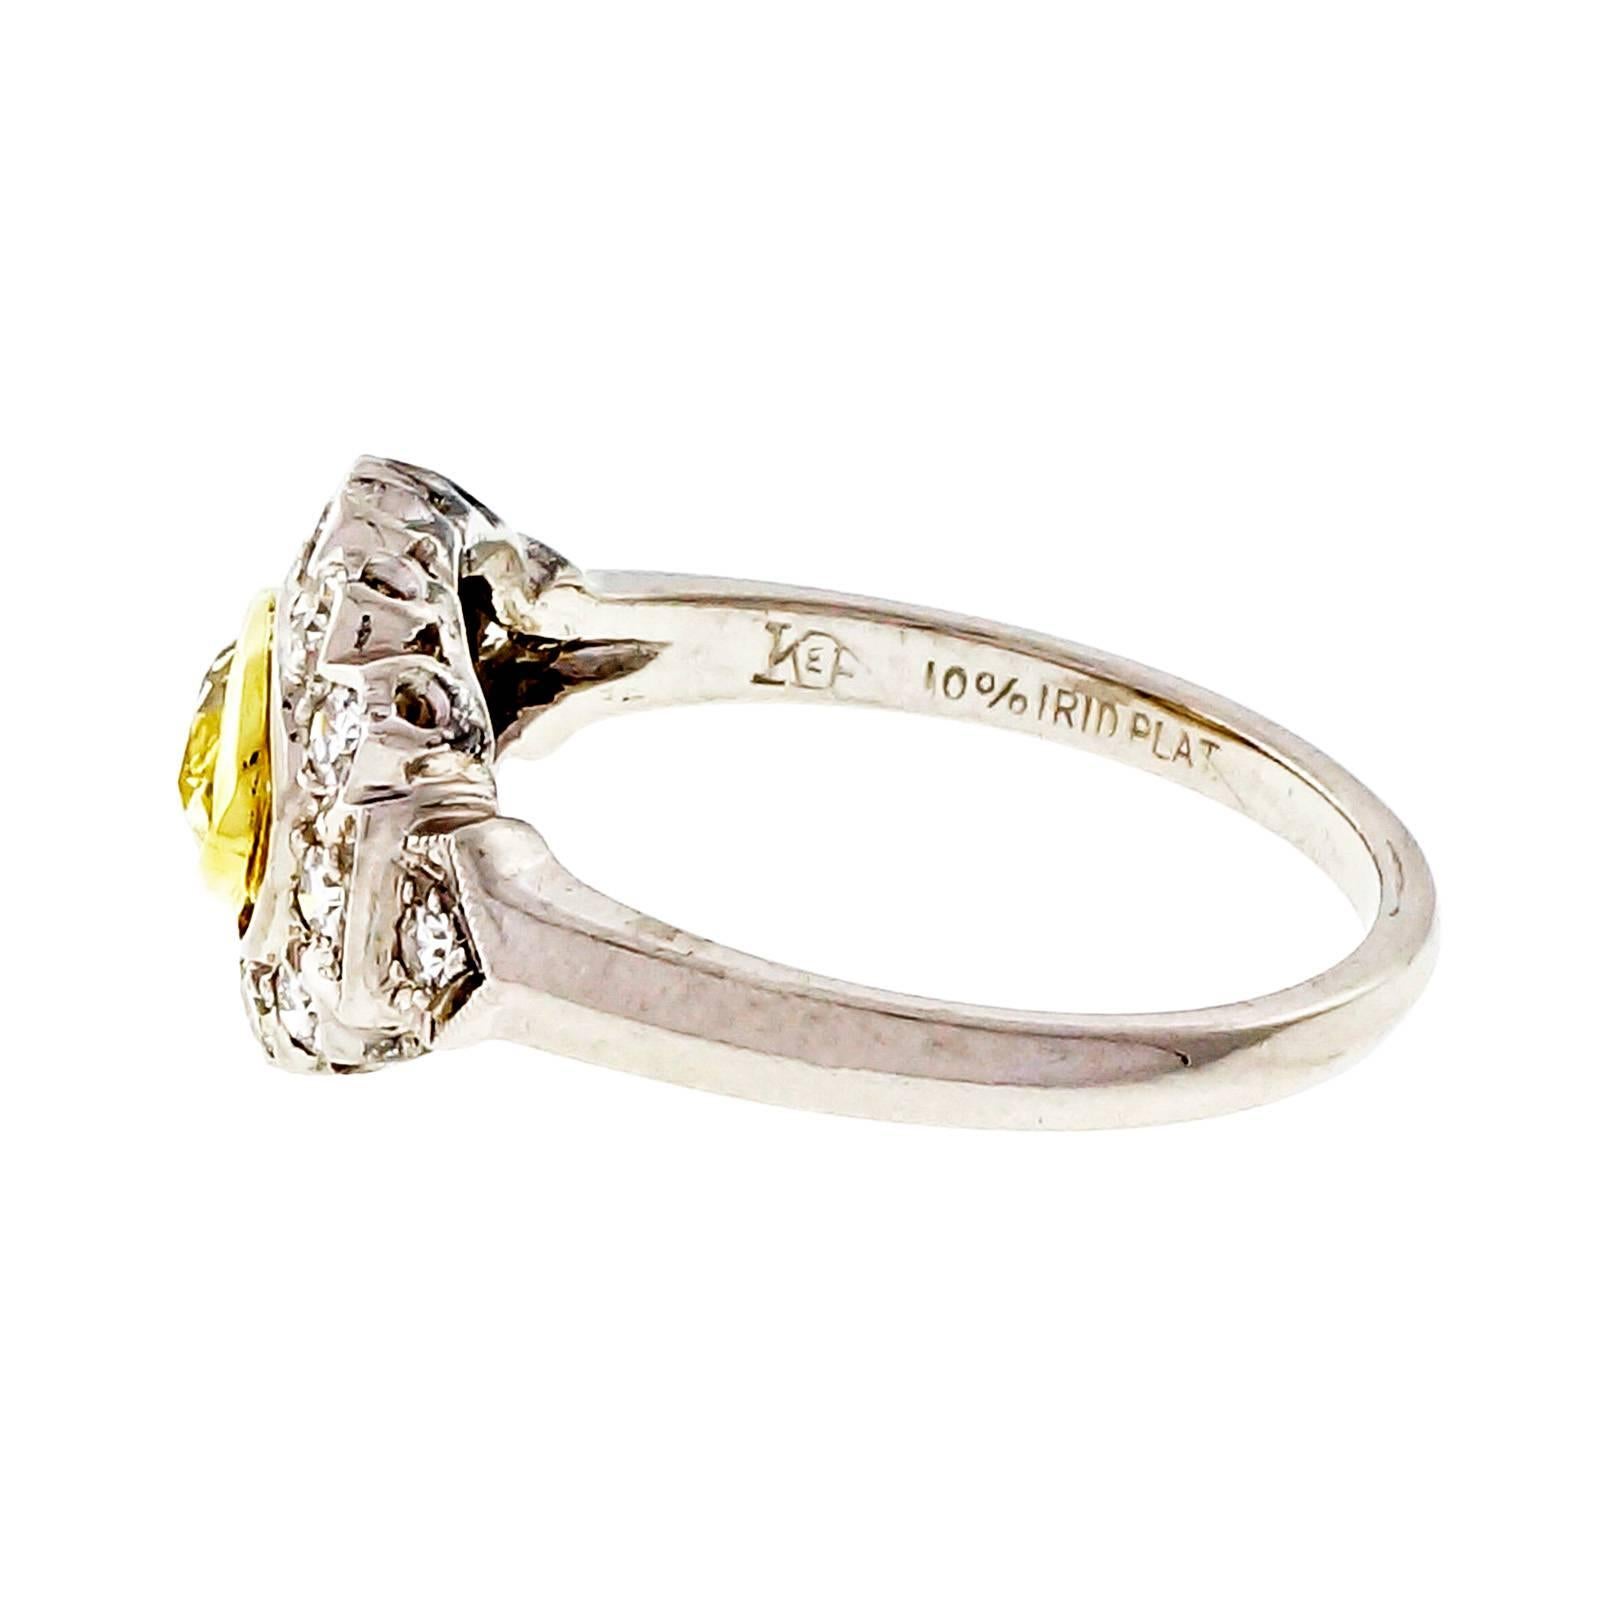 Fancy intensive natürliche gelbe GIA-Zertifikat Diamant Marquise Form in seiner ursprünglichen Platin 1940's Verlobungsring. Setzt sich über den Finger. Lünette tief angesetzt. Umgeben von weißen Diamanten.

1 Marquise intensiv gelber Diamant,